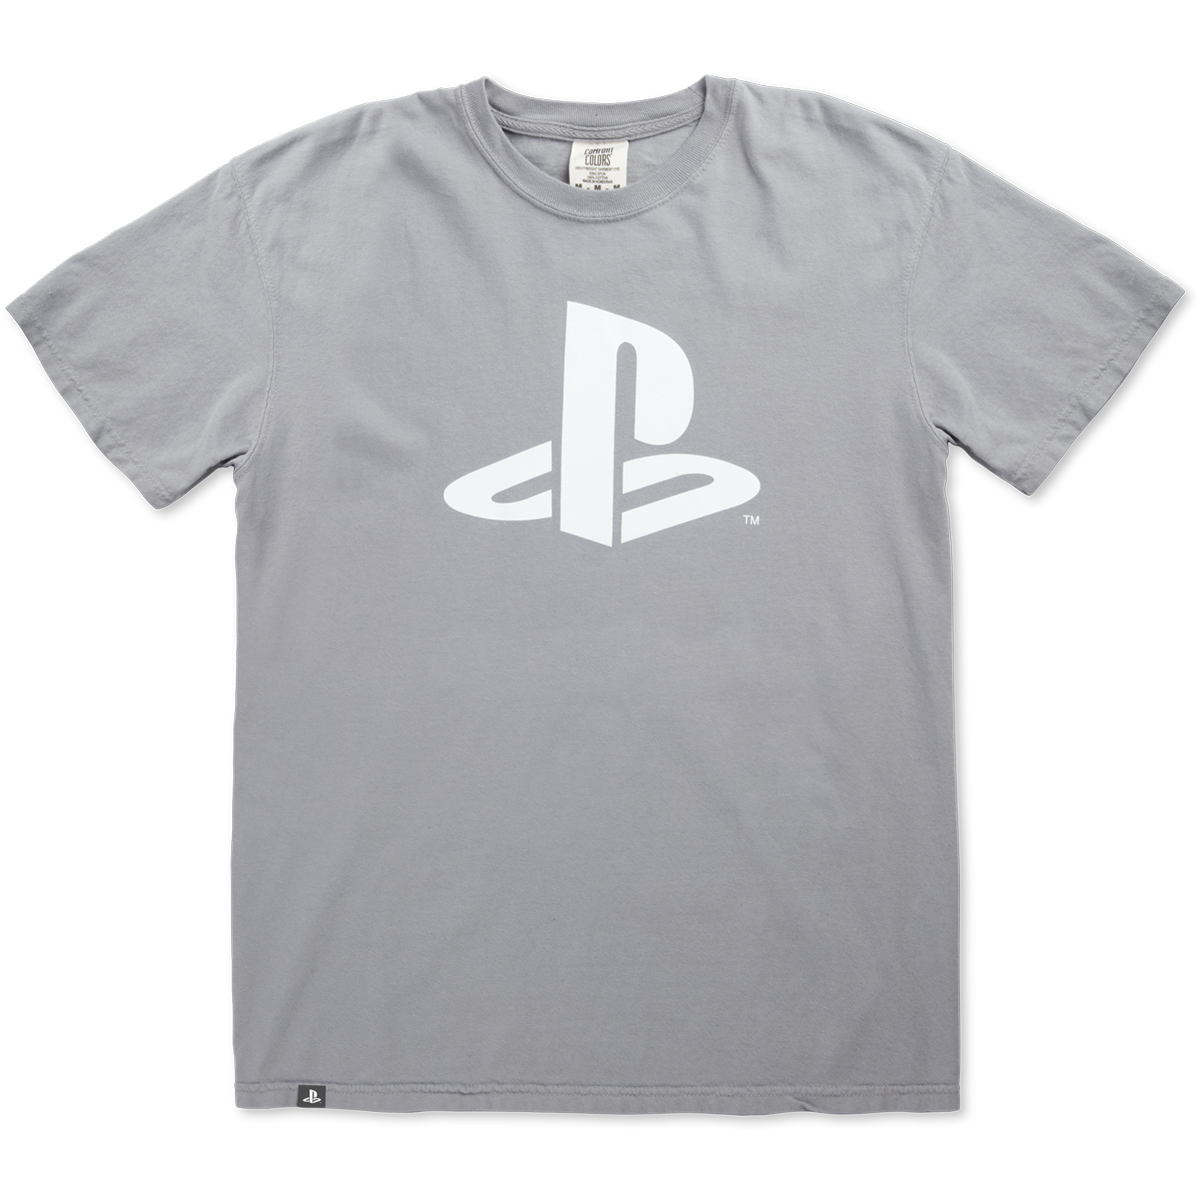 PS Gear - Camiseta con logo de PlayStation